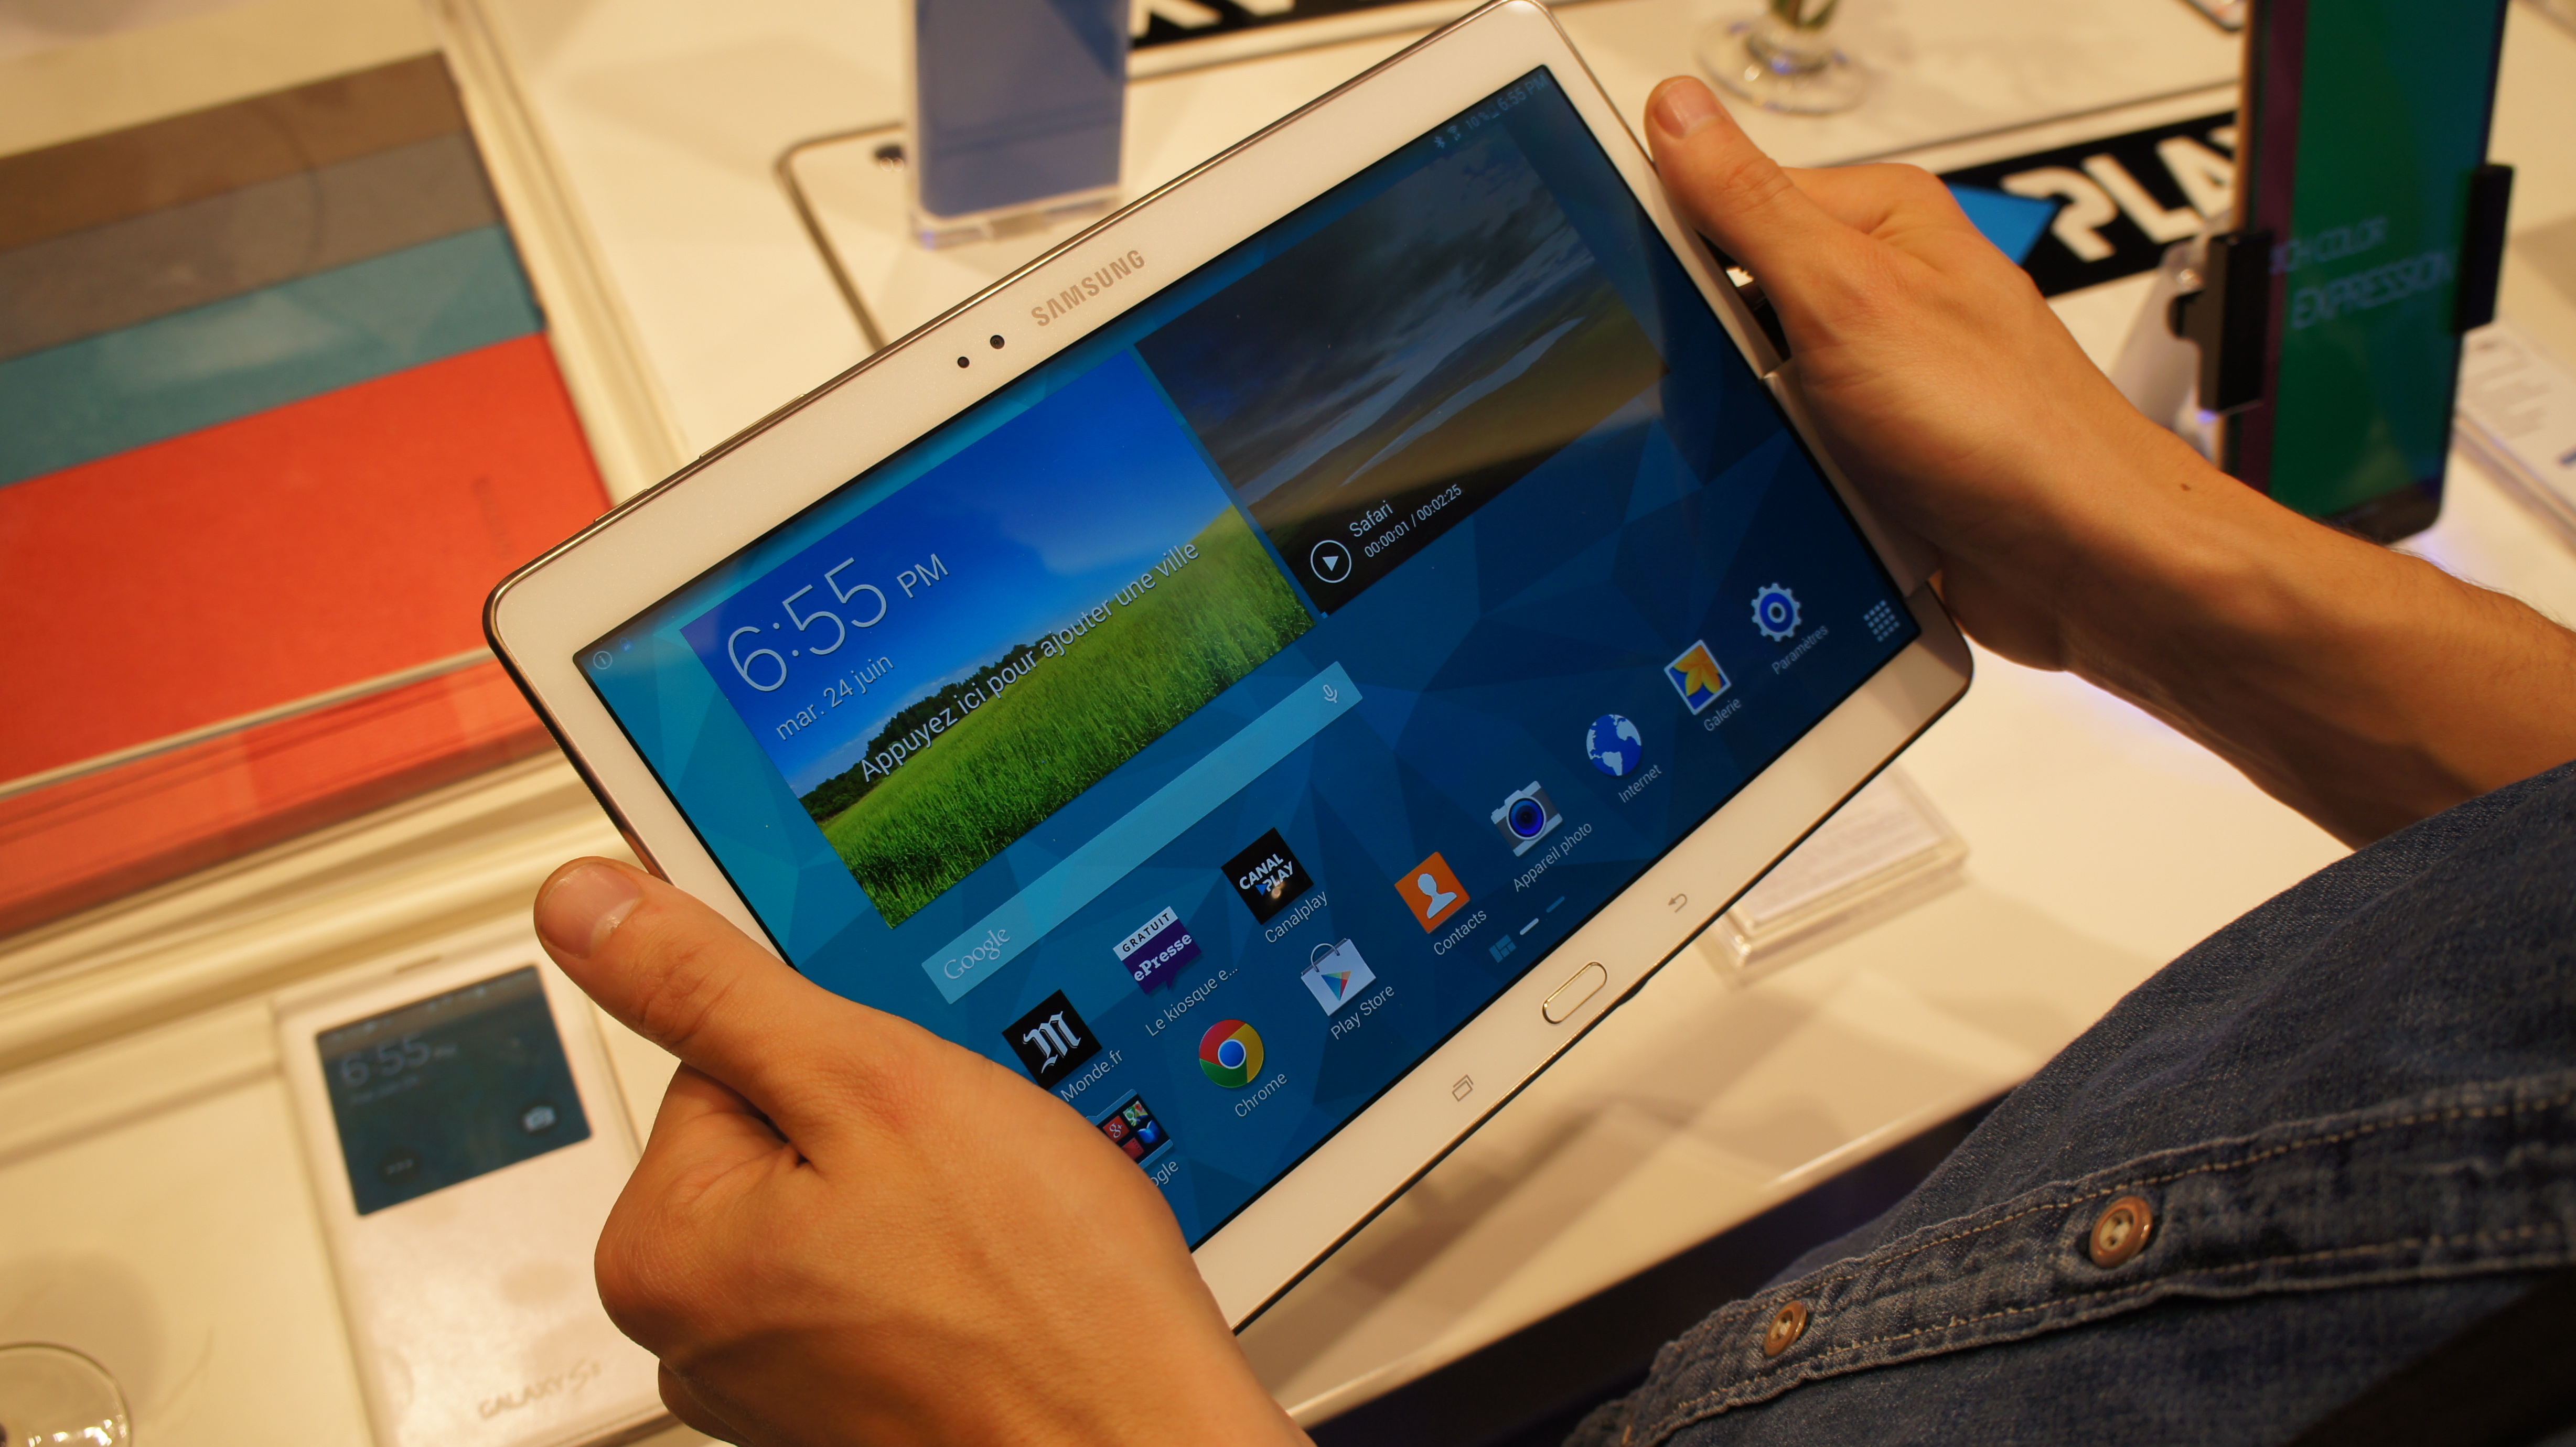 Prise en main des Samsung Galaxy Tab S : puissance, finesse, et légèreté